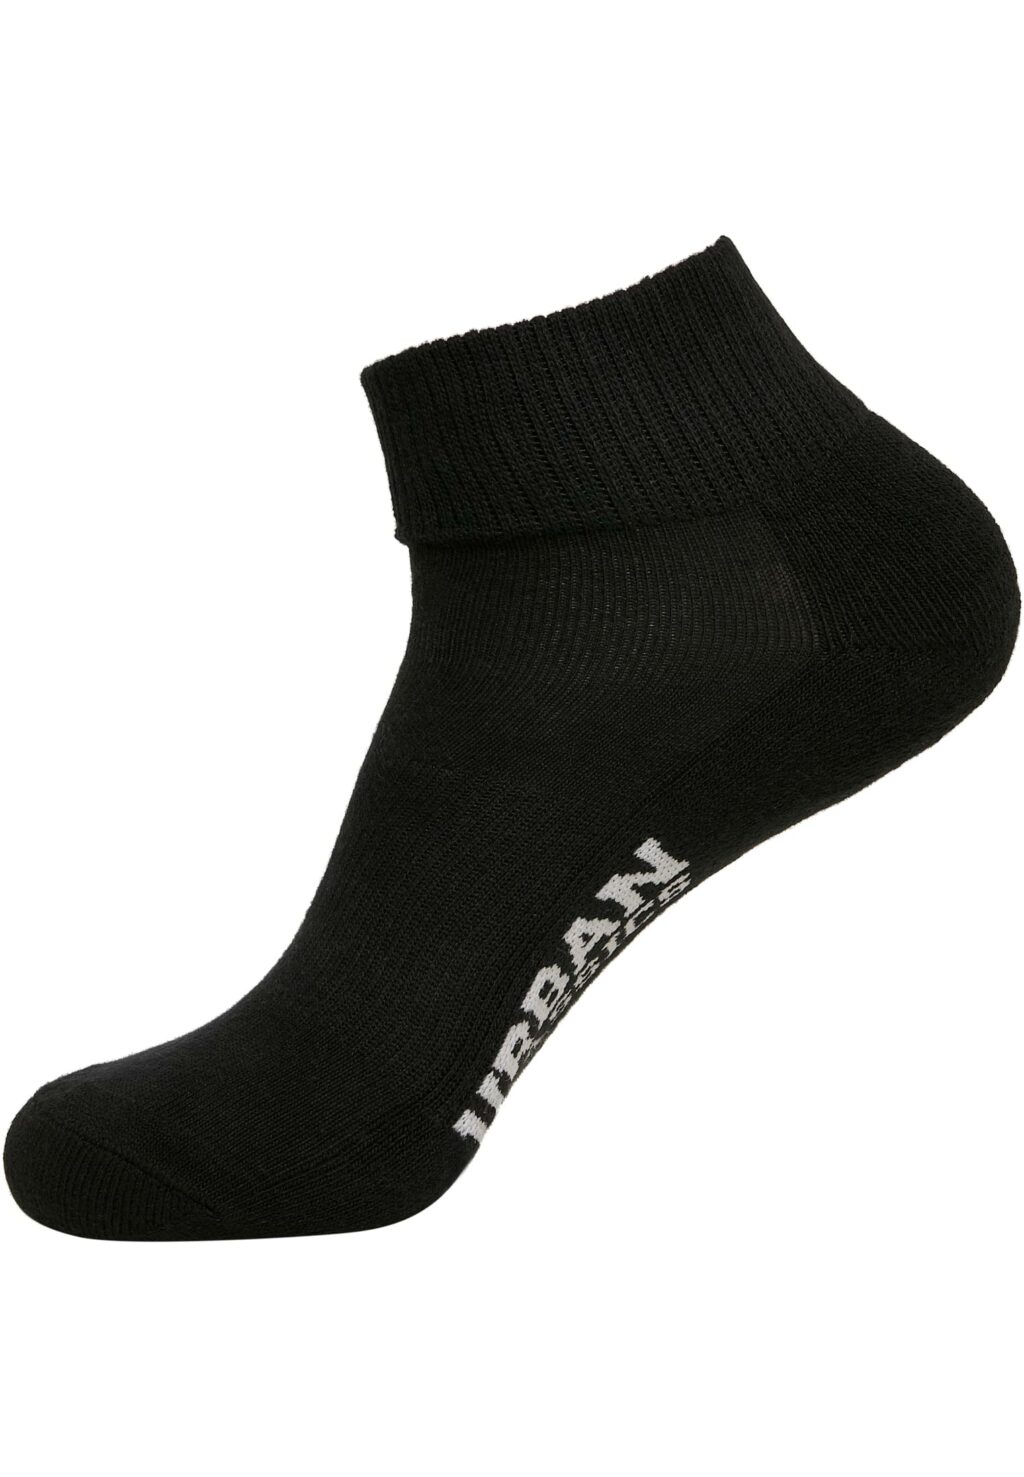 High Sneaker Socks 6-Pack black TB3386